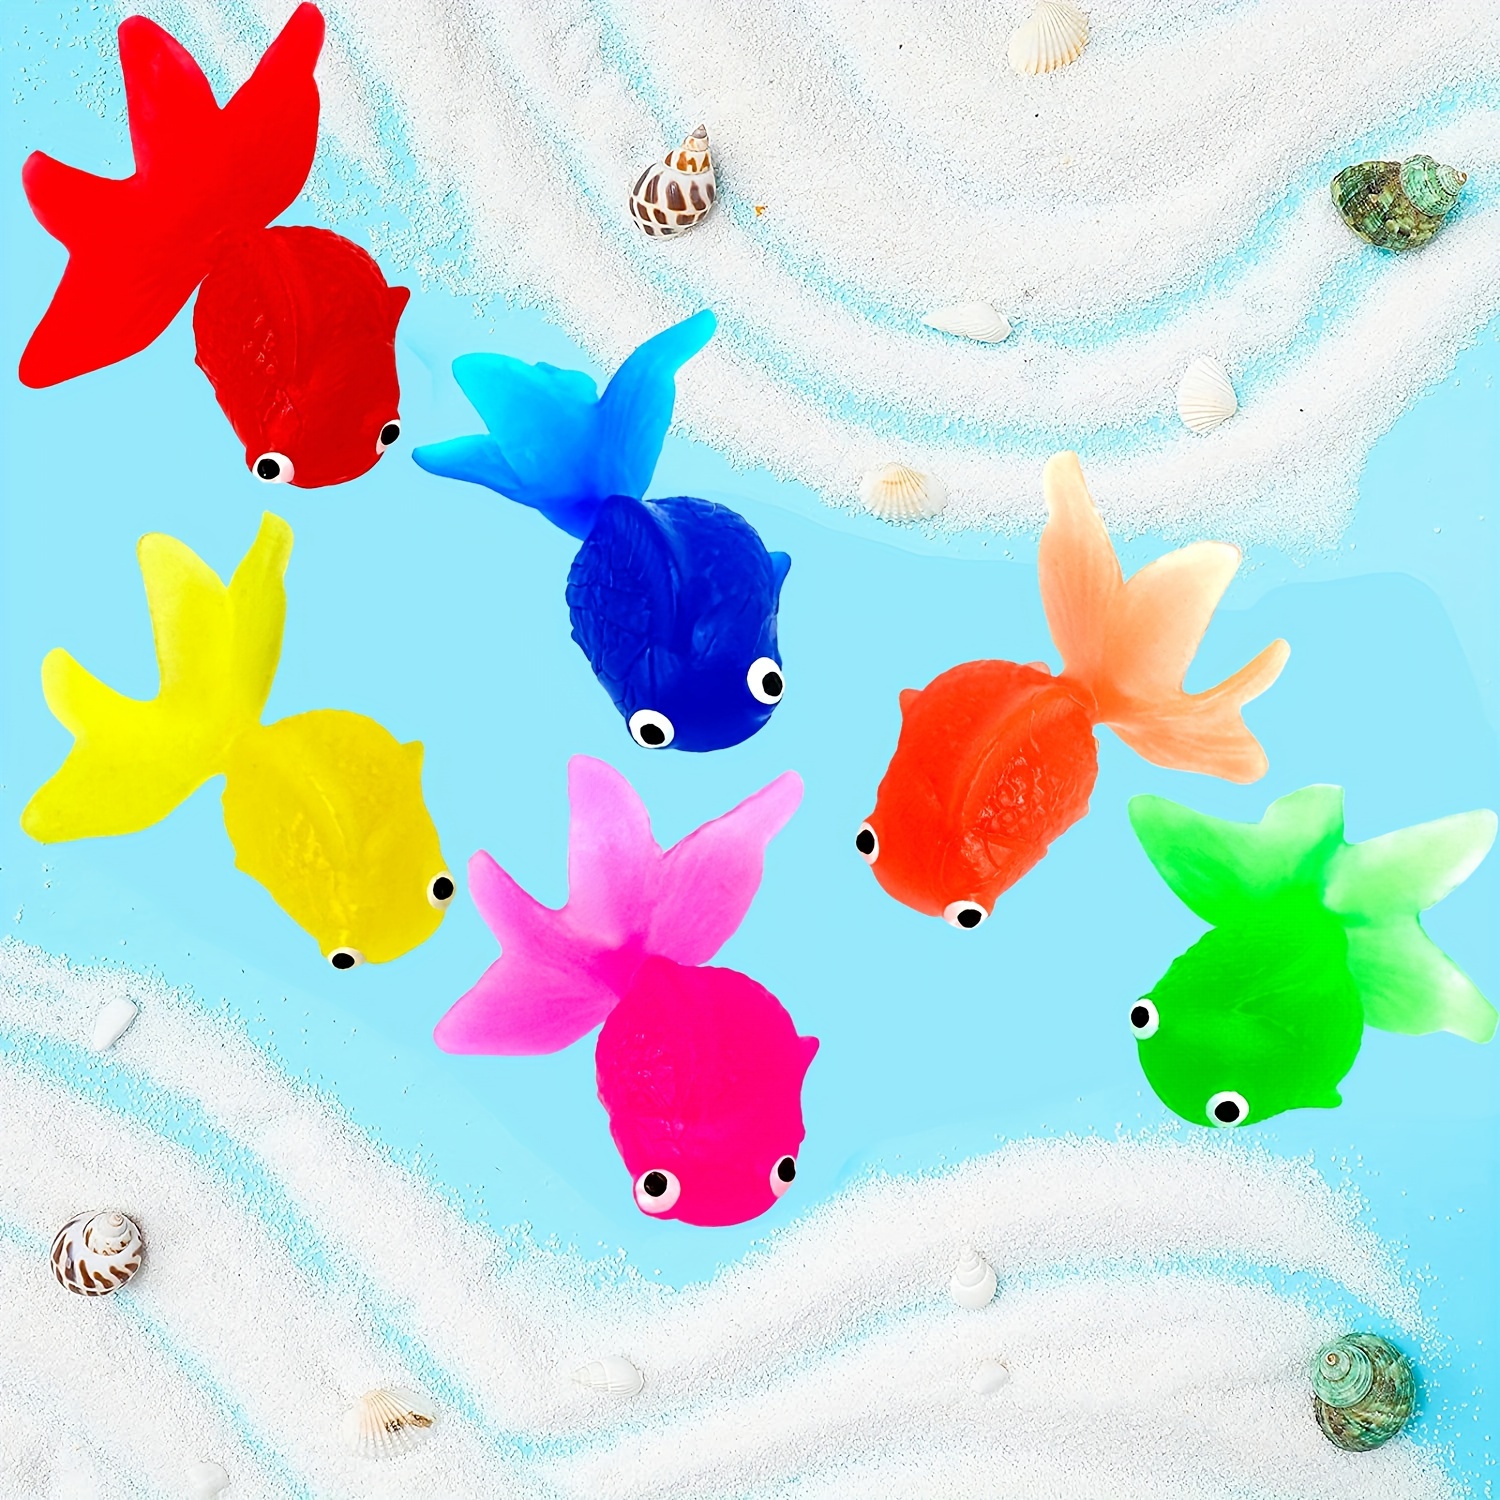 Acheter Jouet de jeu d'eau poisson rouge 12p, jouets coréens pour enfants